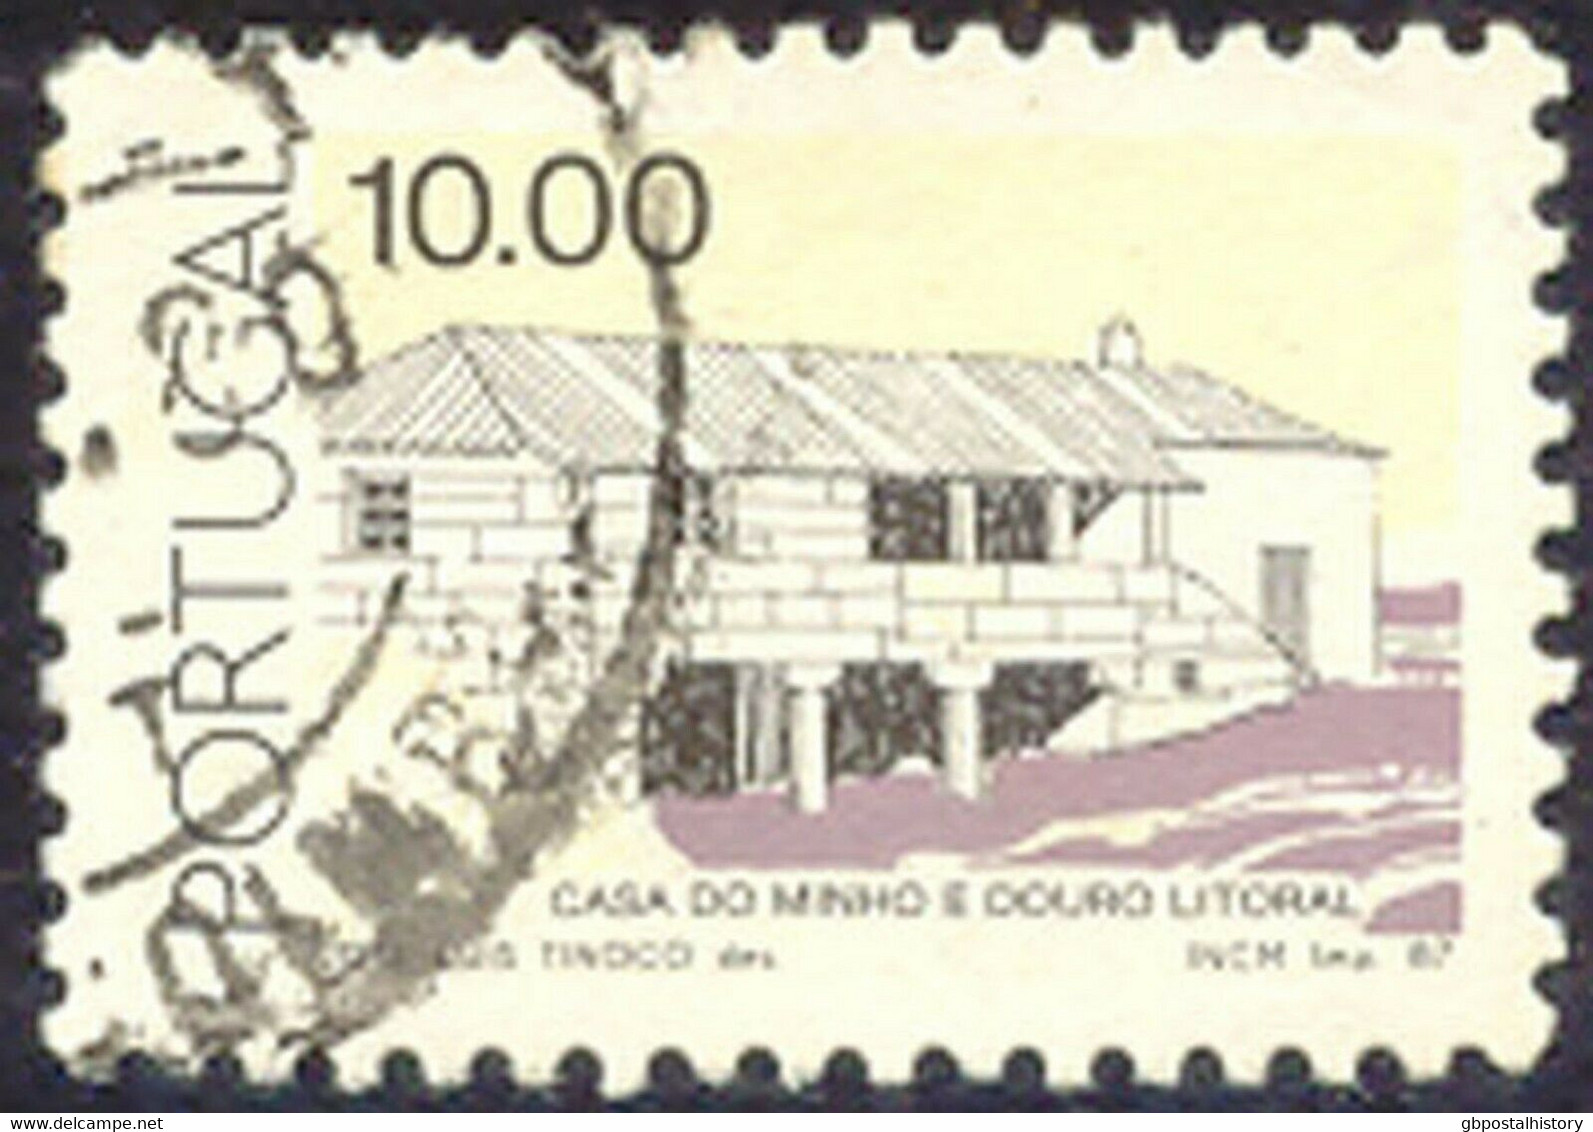 PORTUGAL 1987 10.00 (E.) Landhaus Minho Und Douro Litoral Gest. MISSING COLOUR - Oblitérés